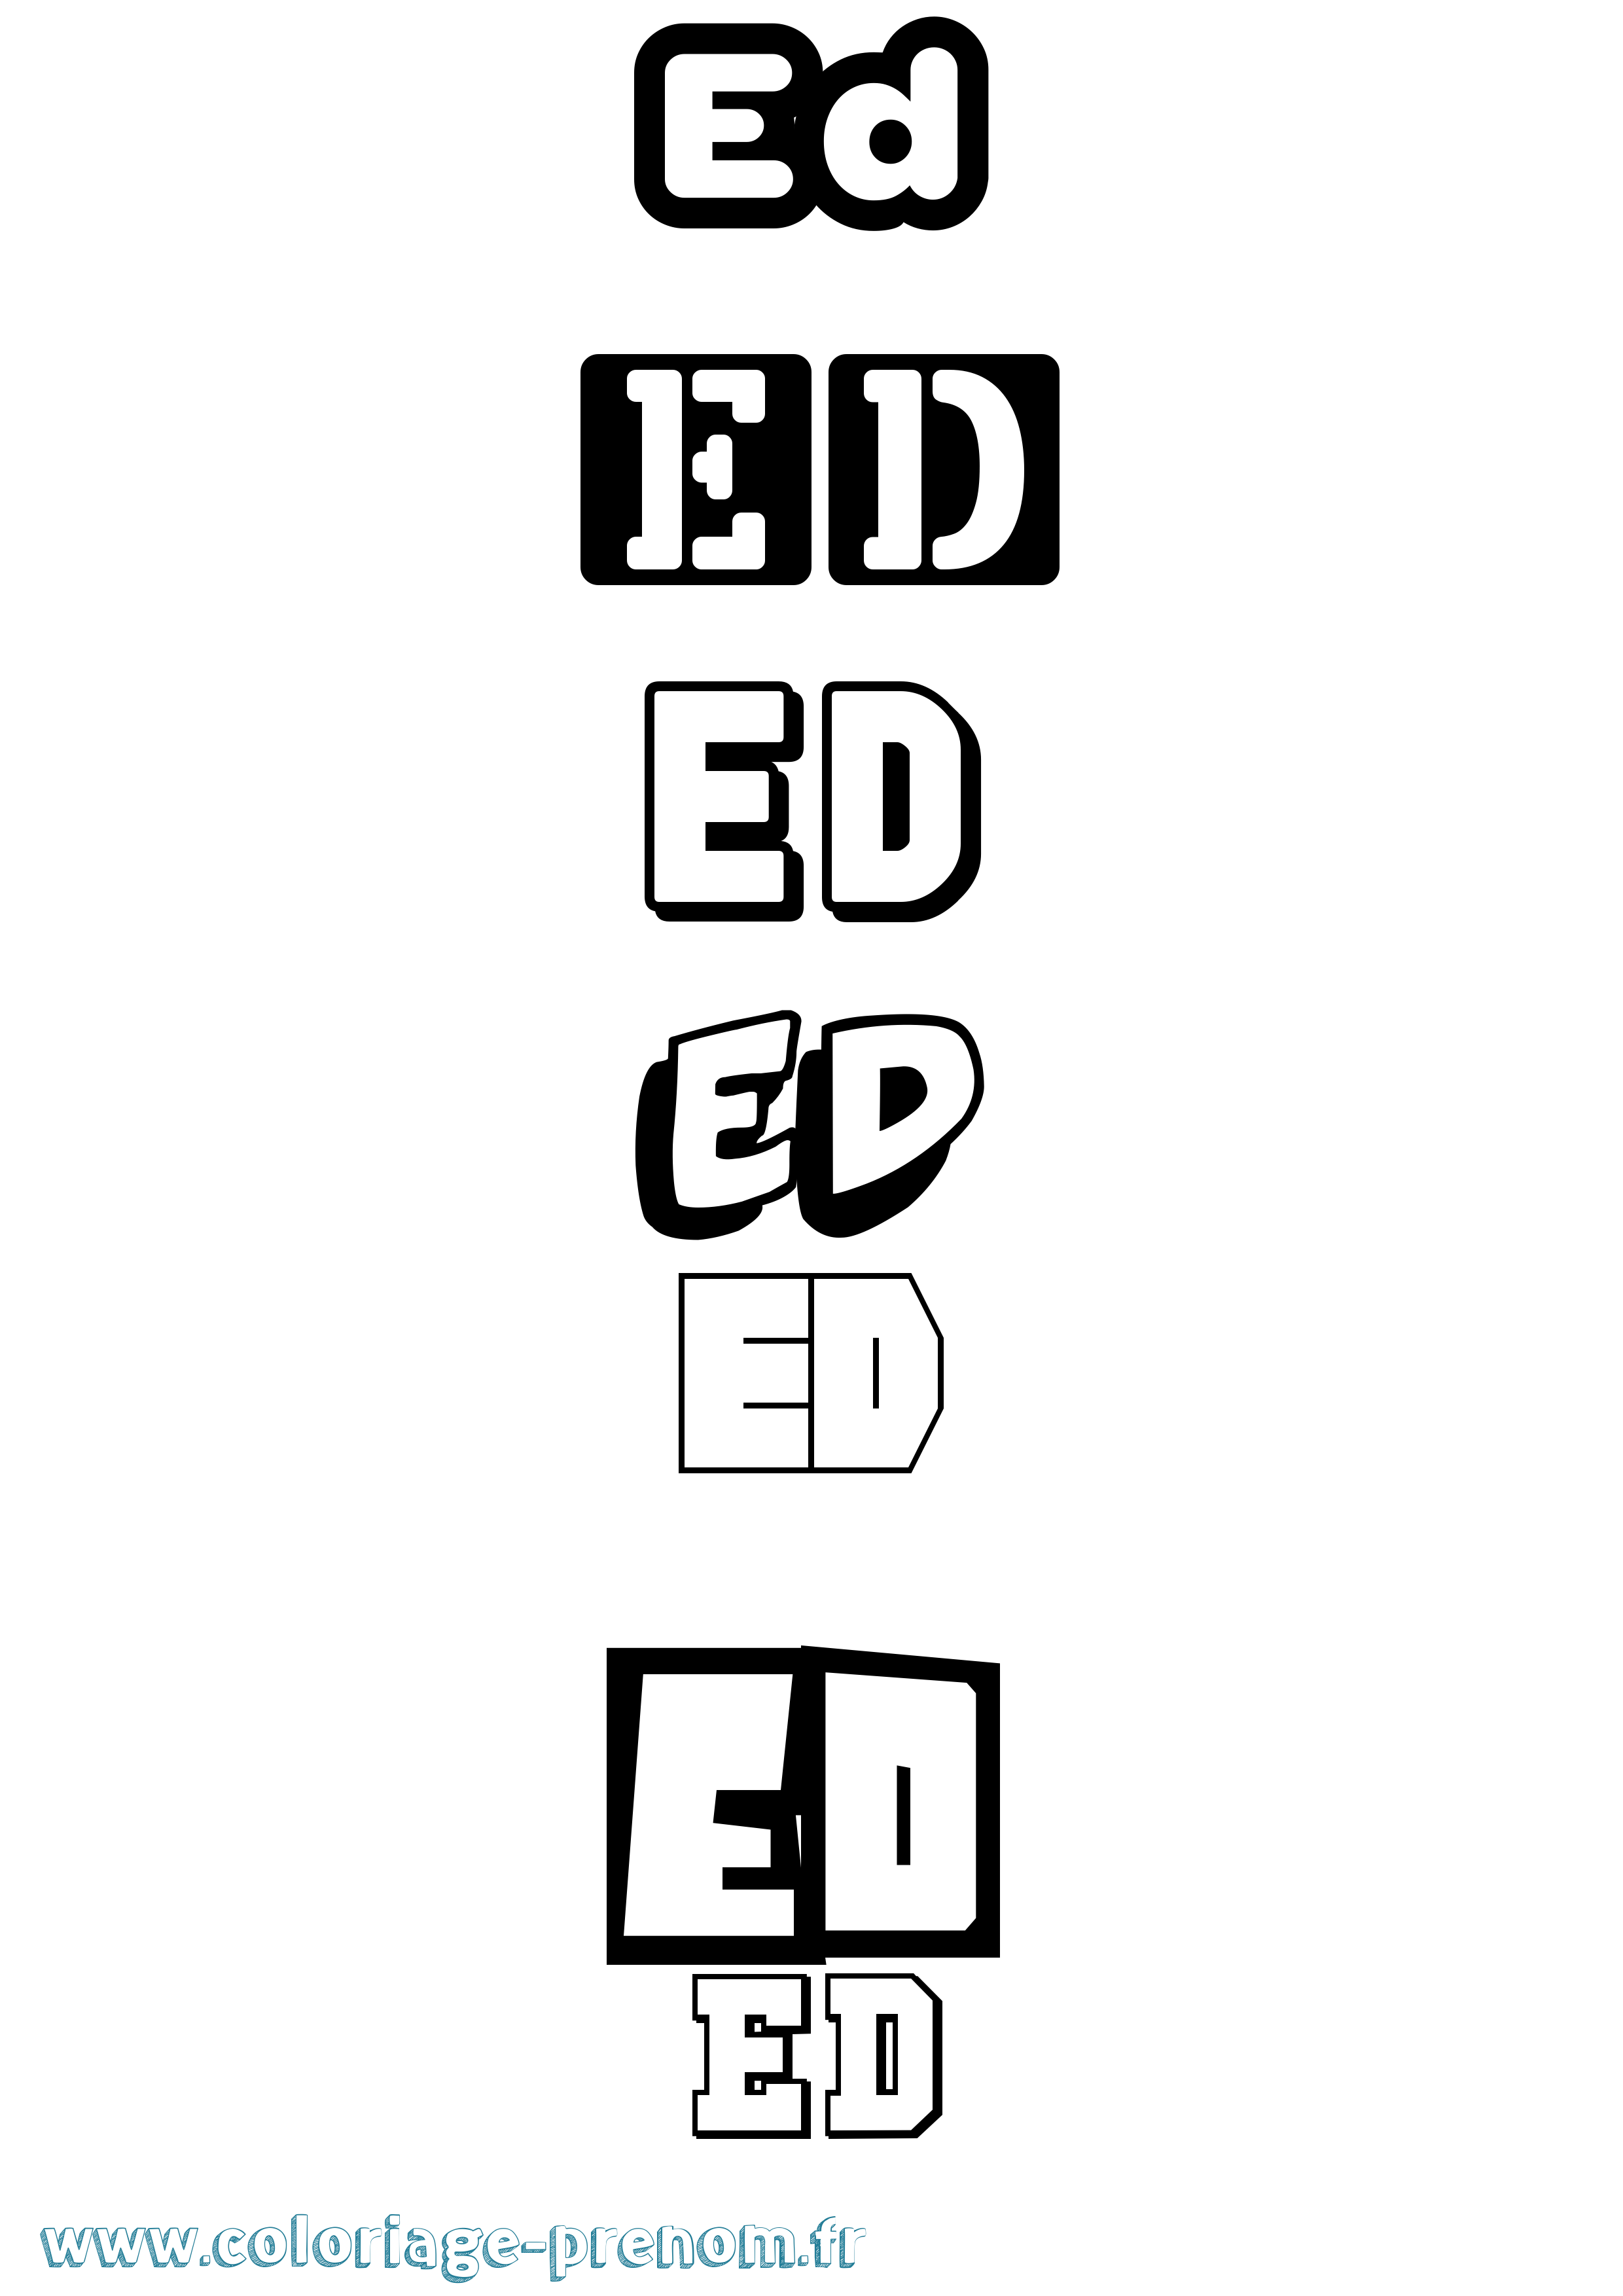 Coloriage prénom Ed Simple